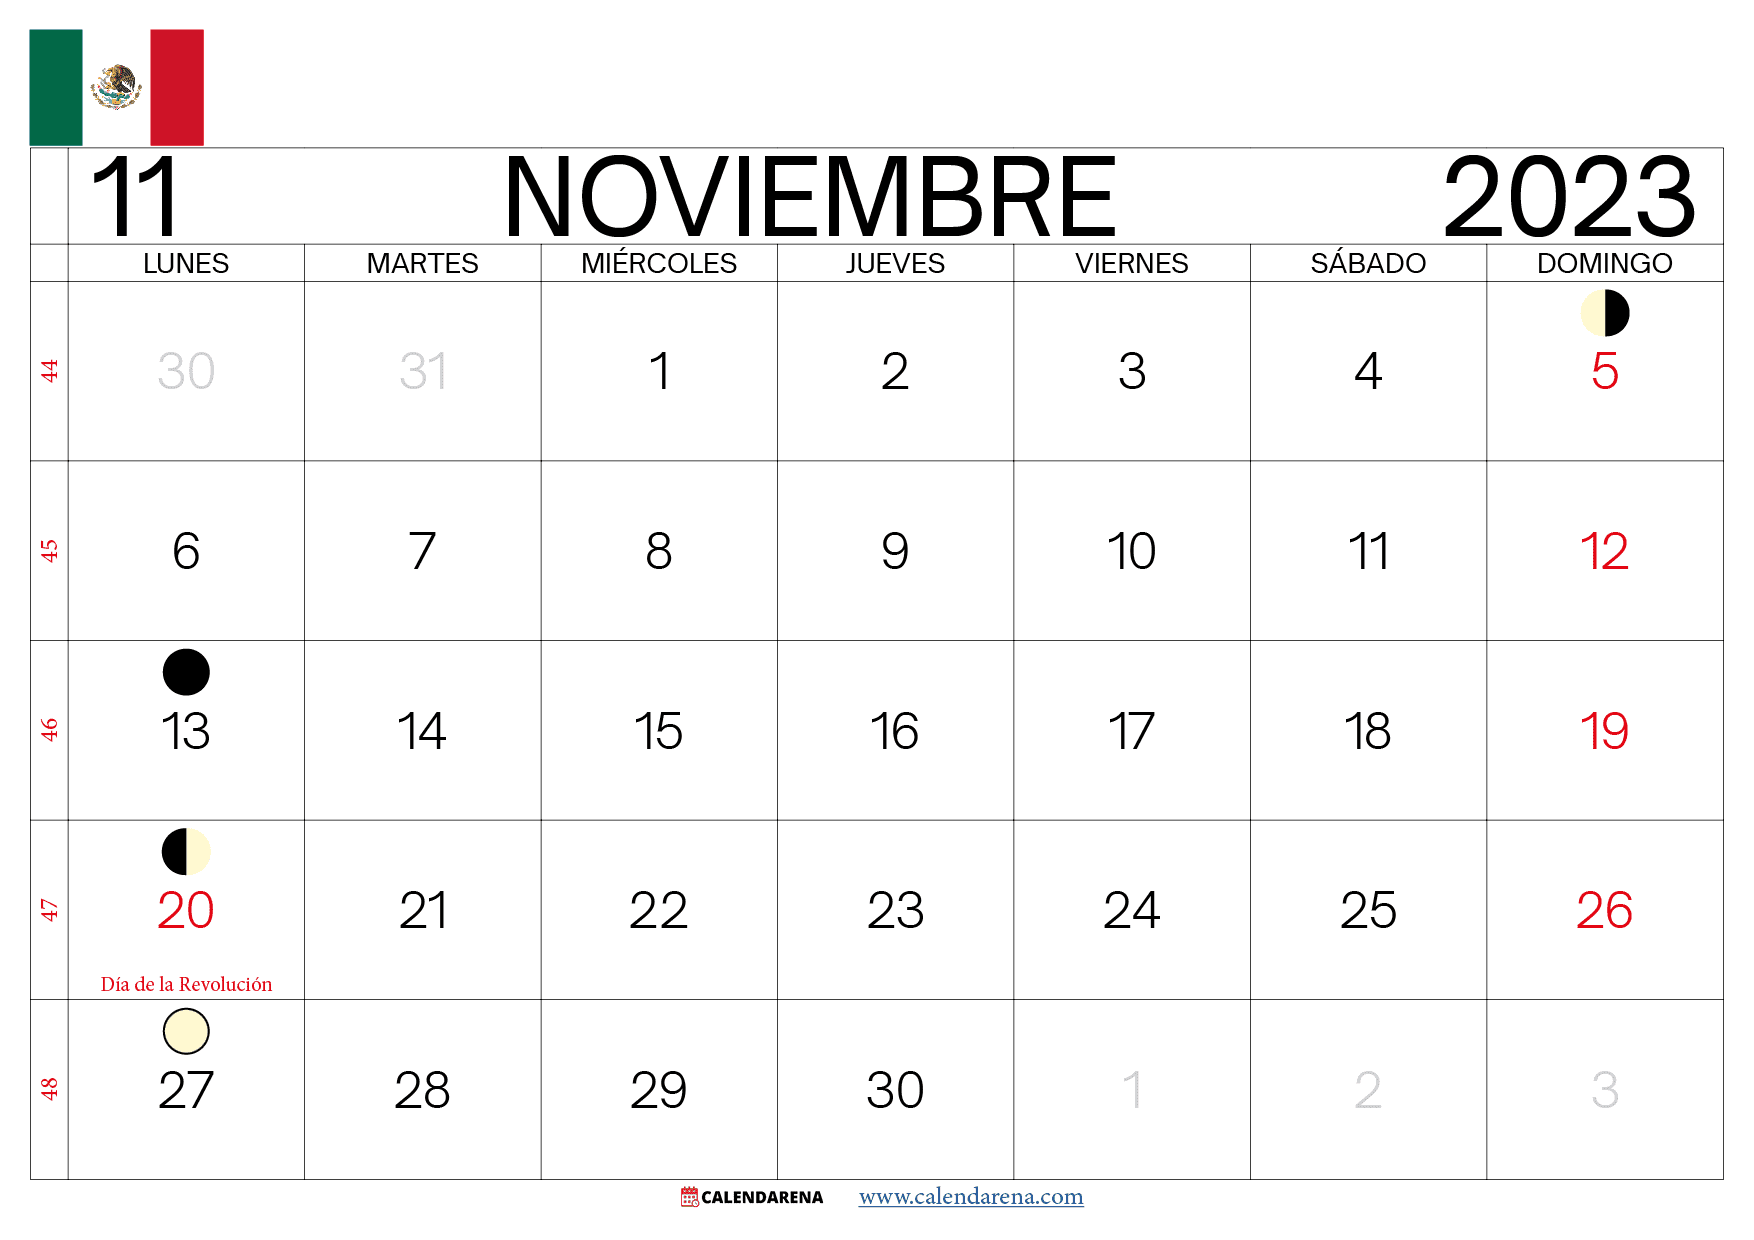 almanaque noviembre 2023 mexico